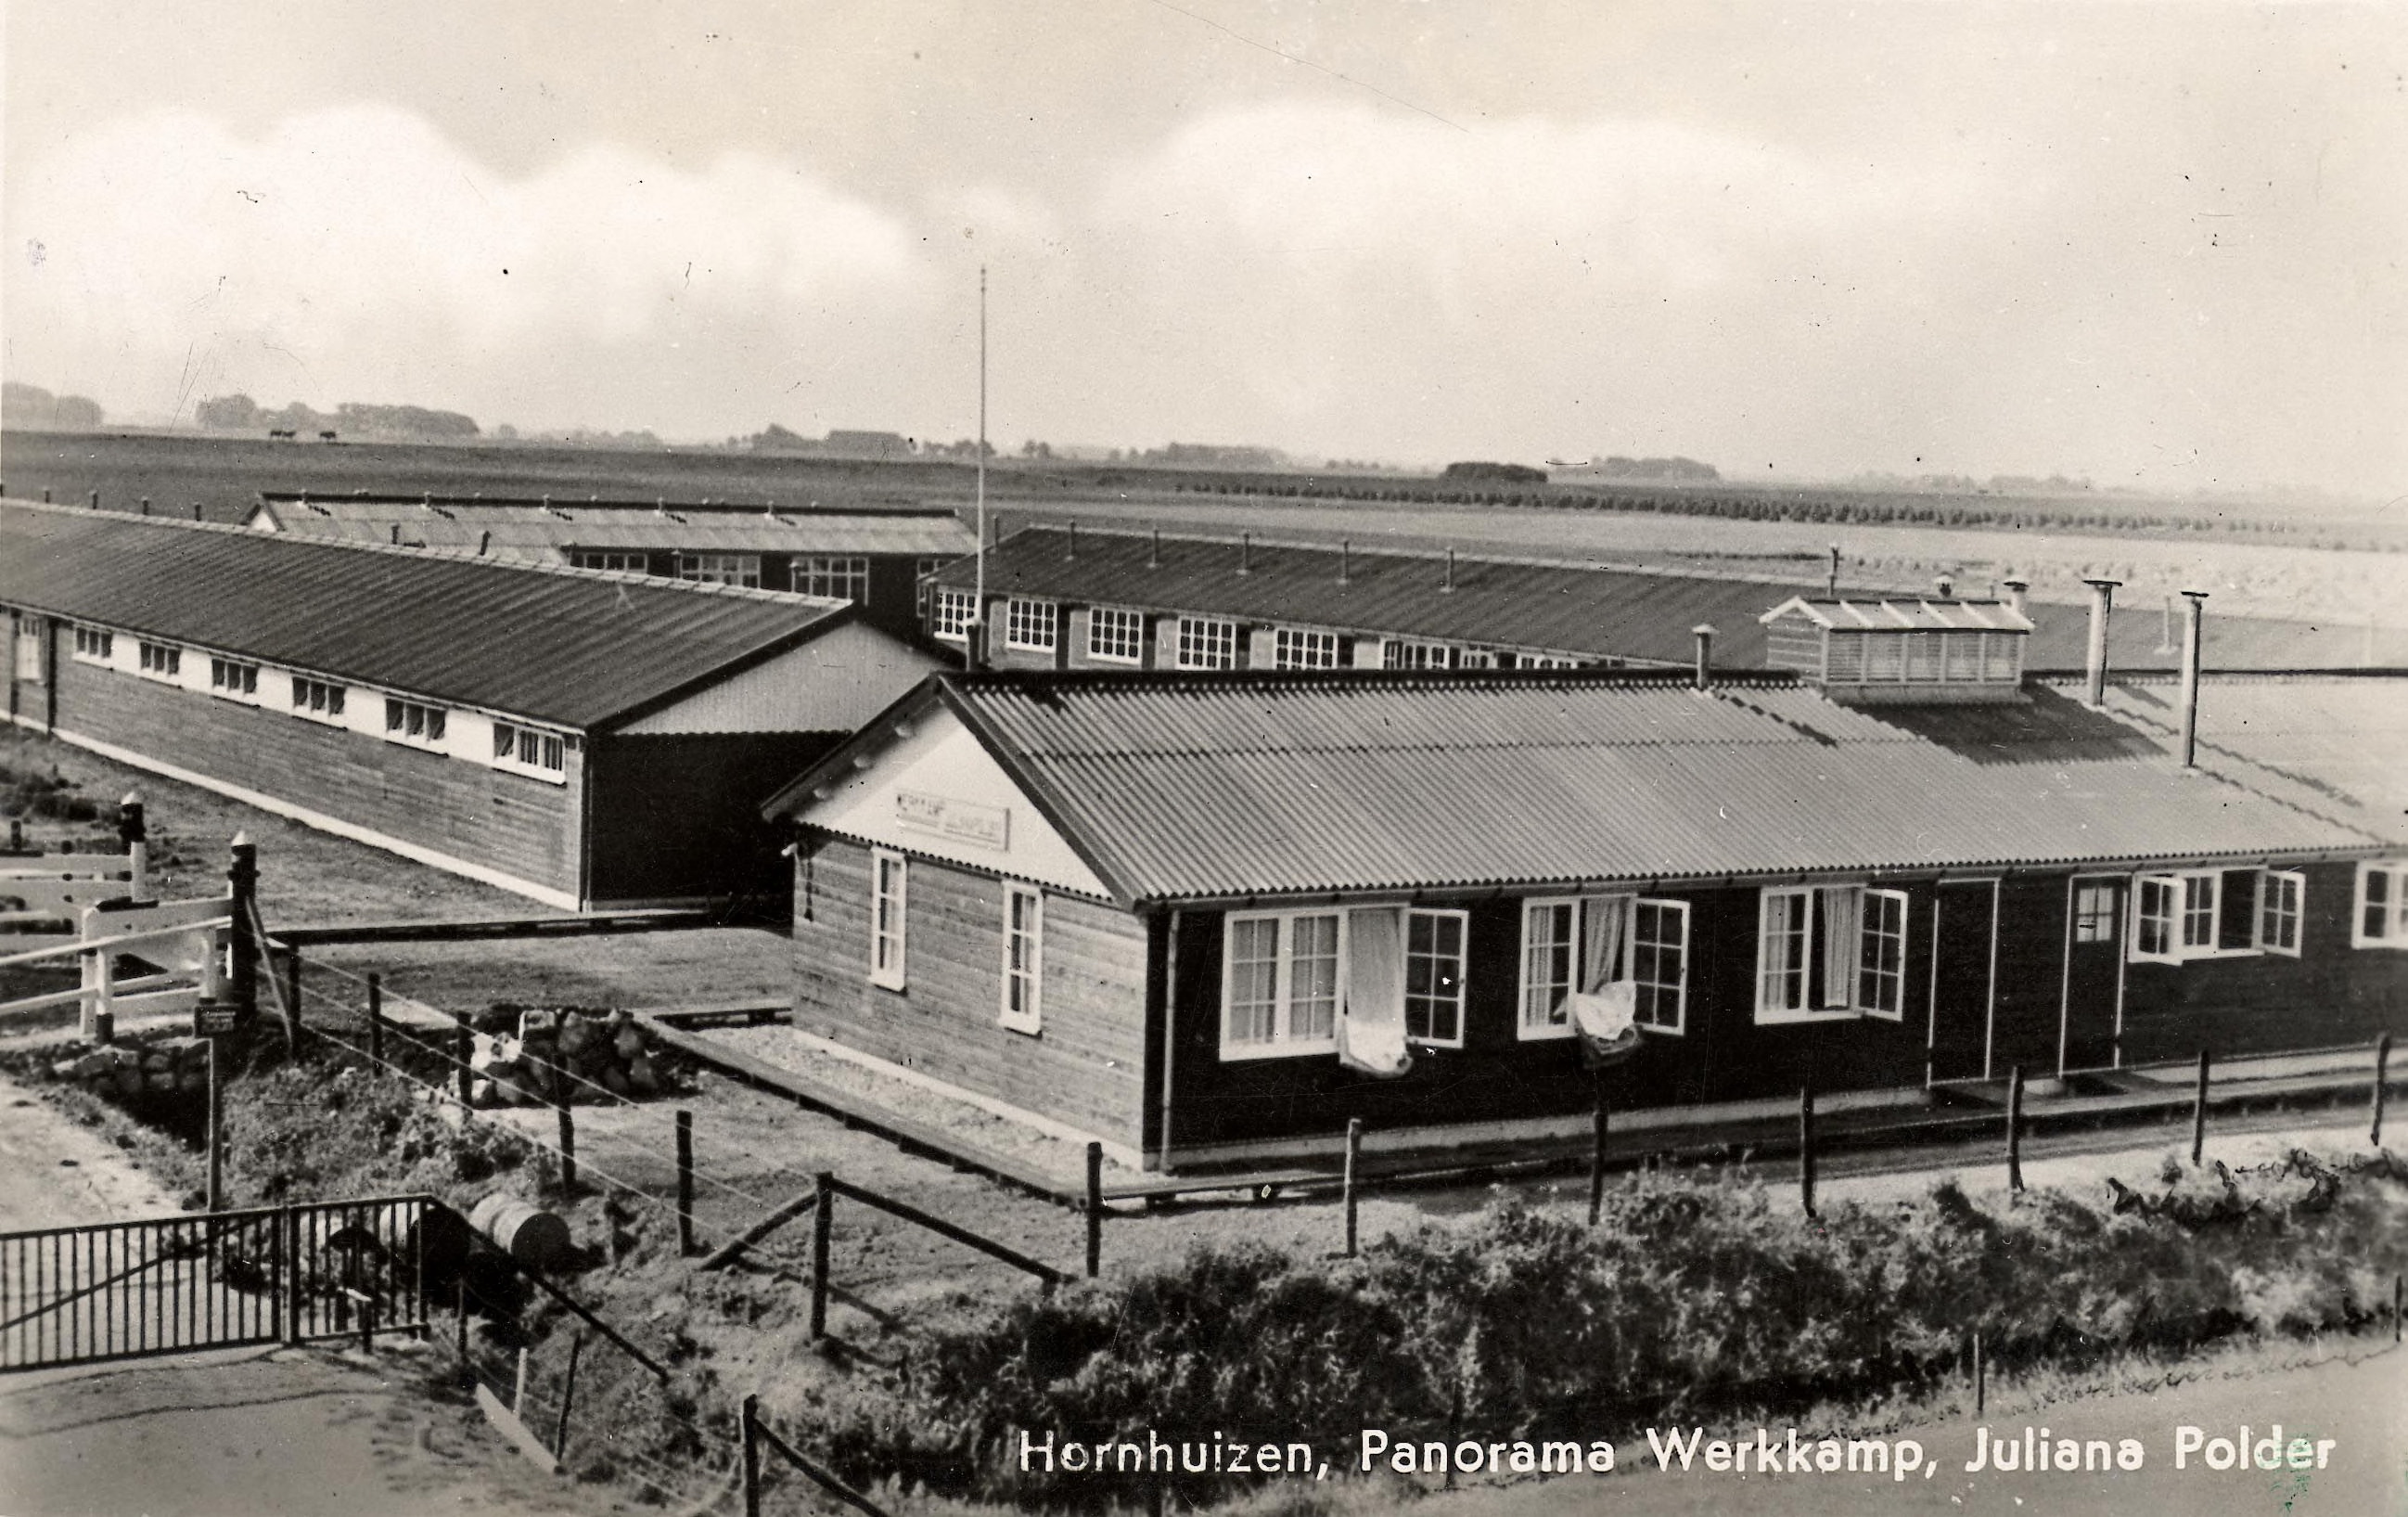 Ansichtkaart van het voormalige werkkamp in de Juliana Polder bij Hornhuizen. Foto: 1939.